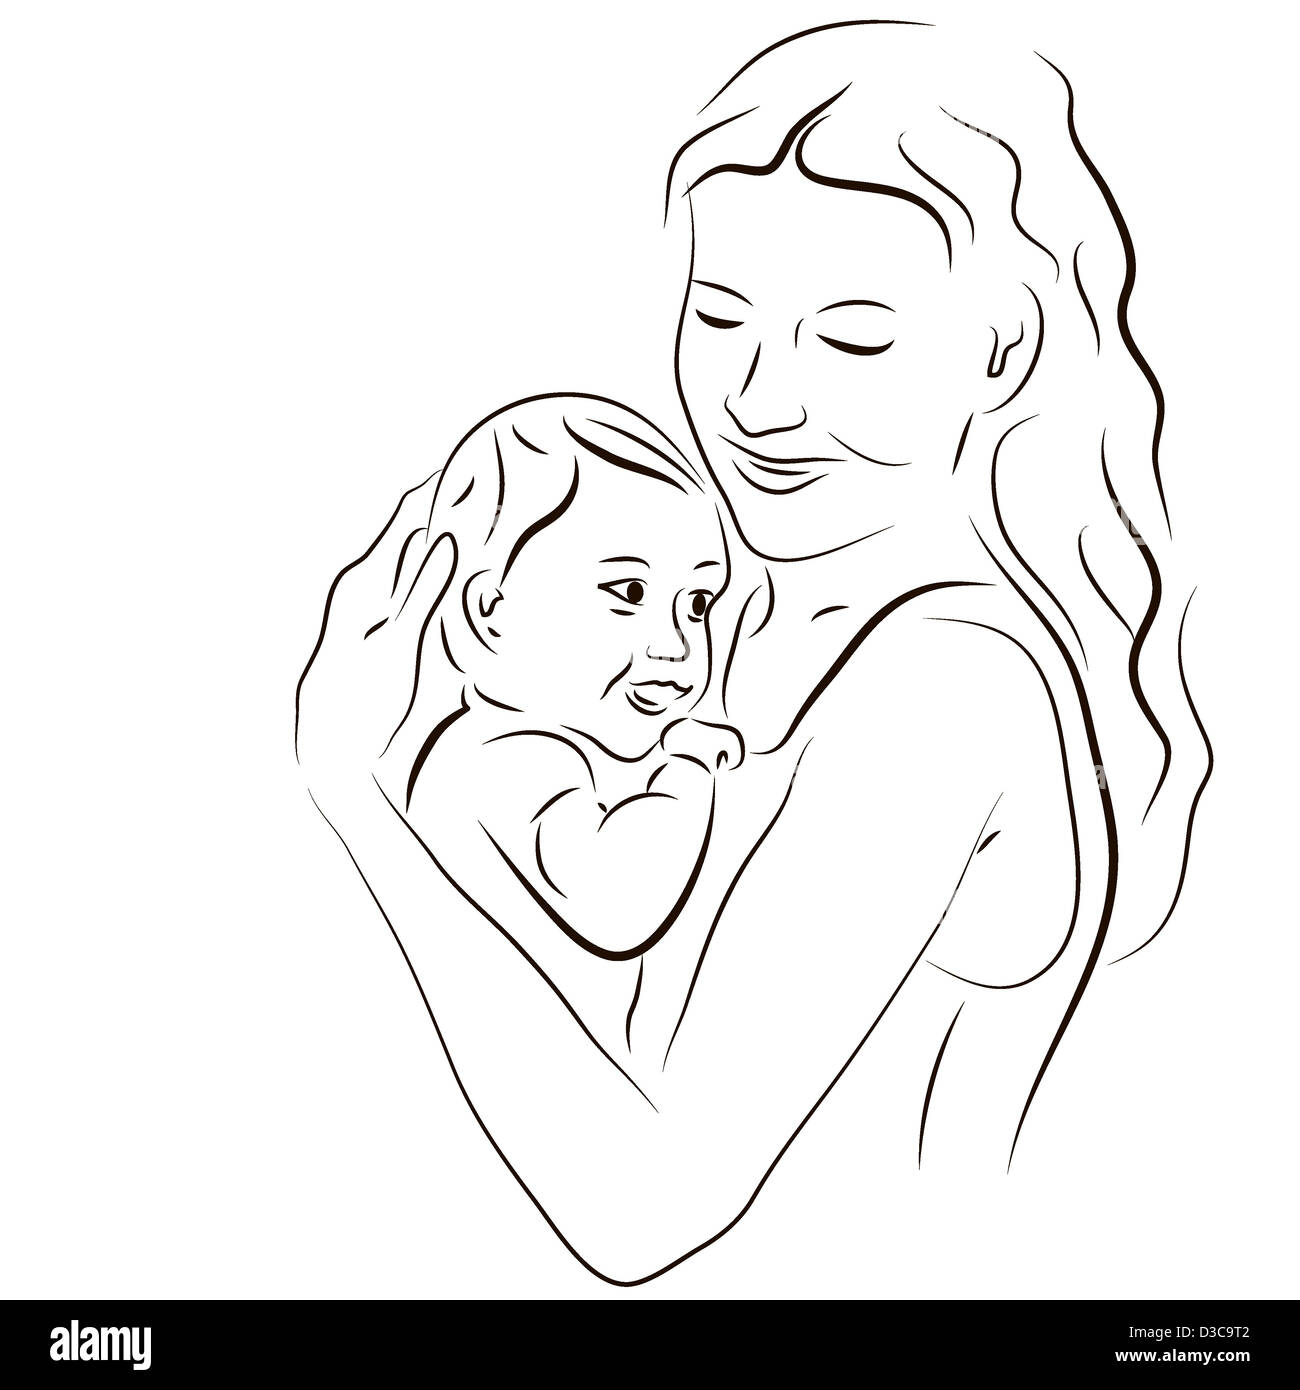 Портрет матери и ребенка на руках карандашом